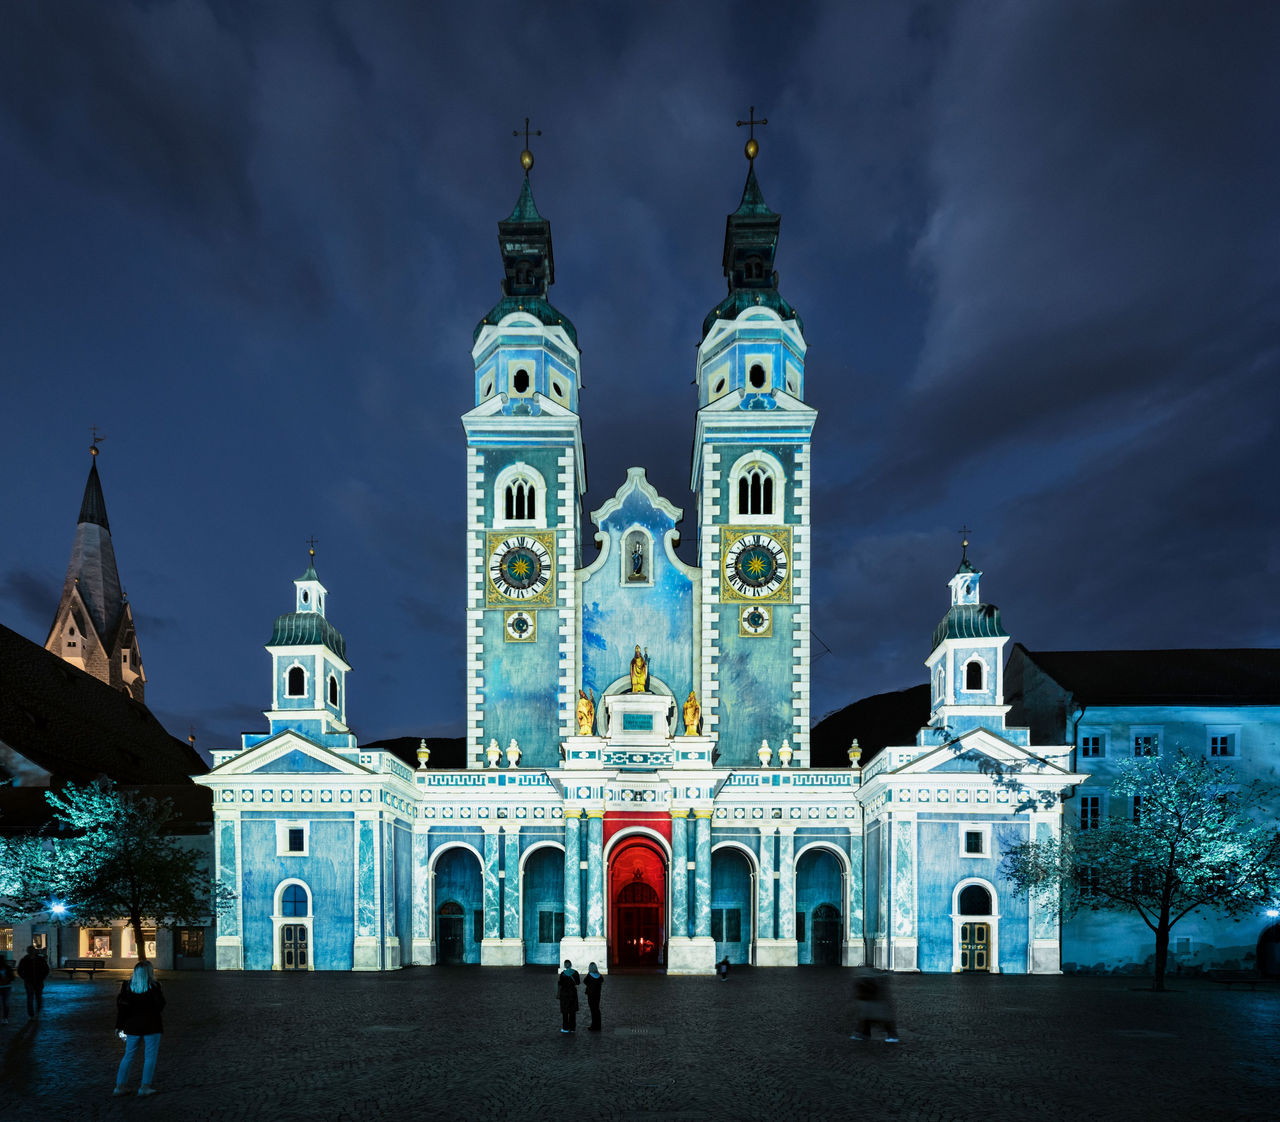 Die Fassaden der Hofburg schillern wÃ¤hrend der nÃ¤chtlichen Lichtshow in faszinierenden Farben